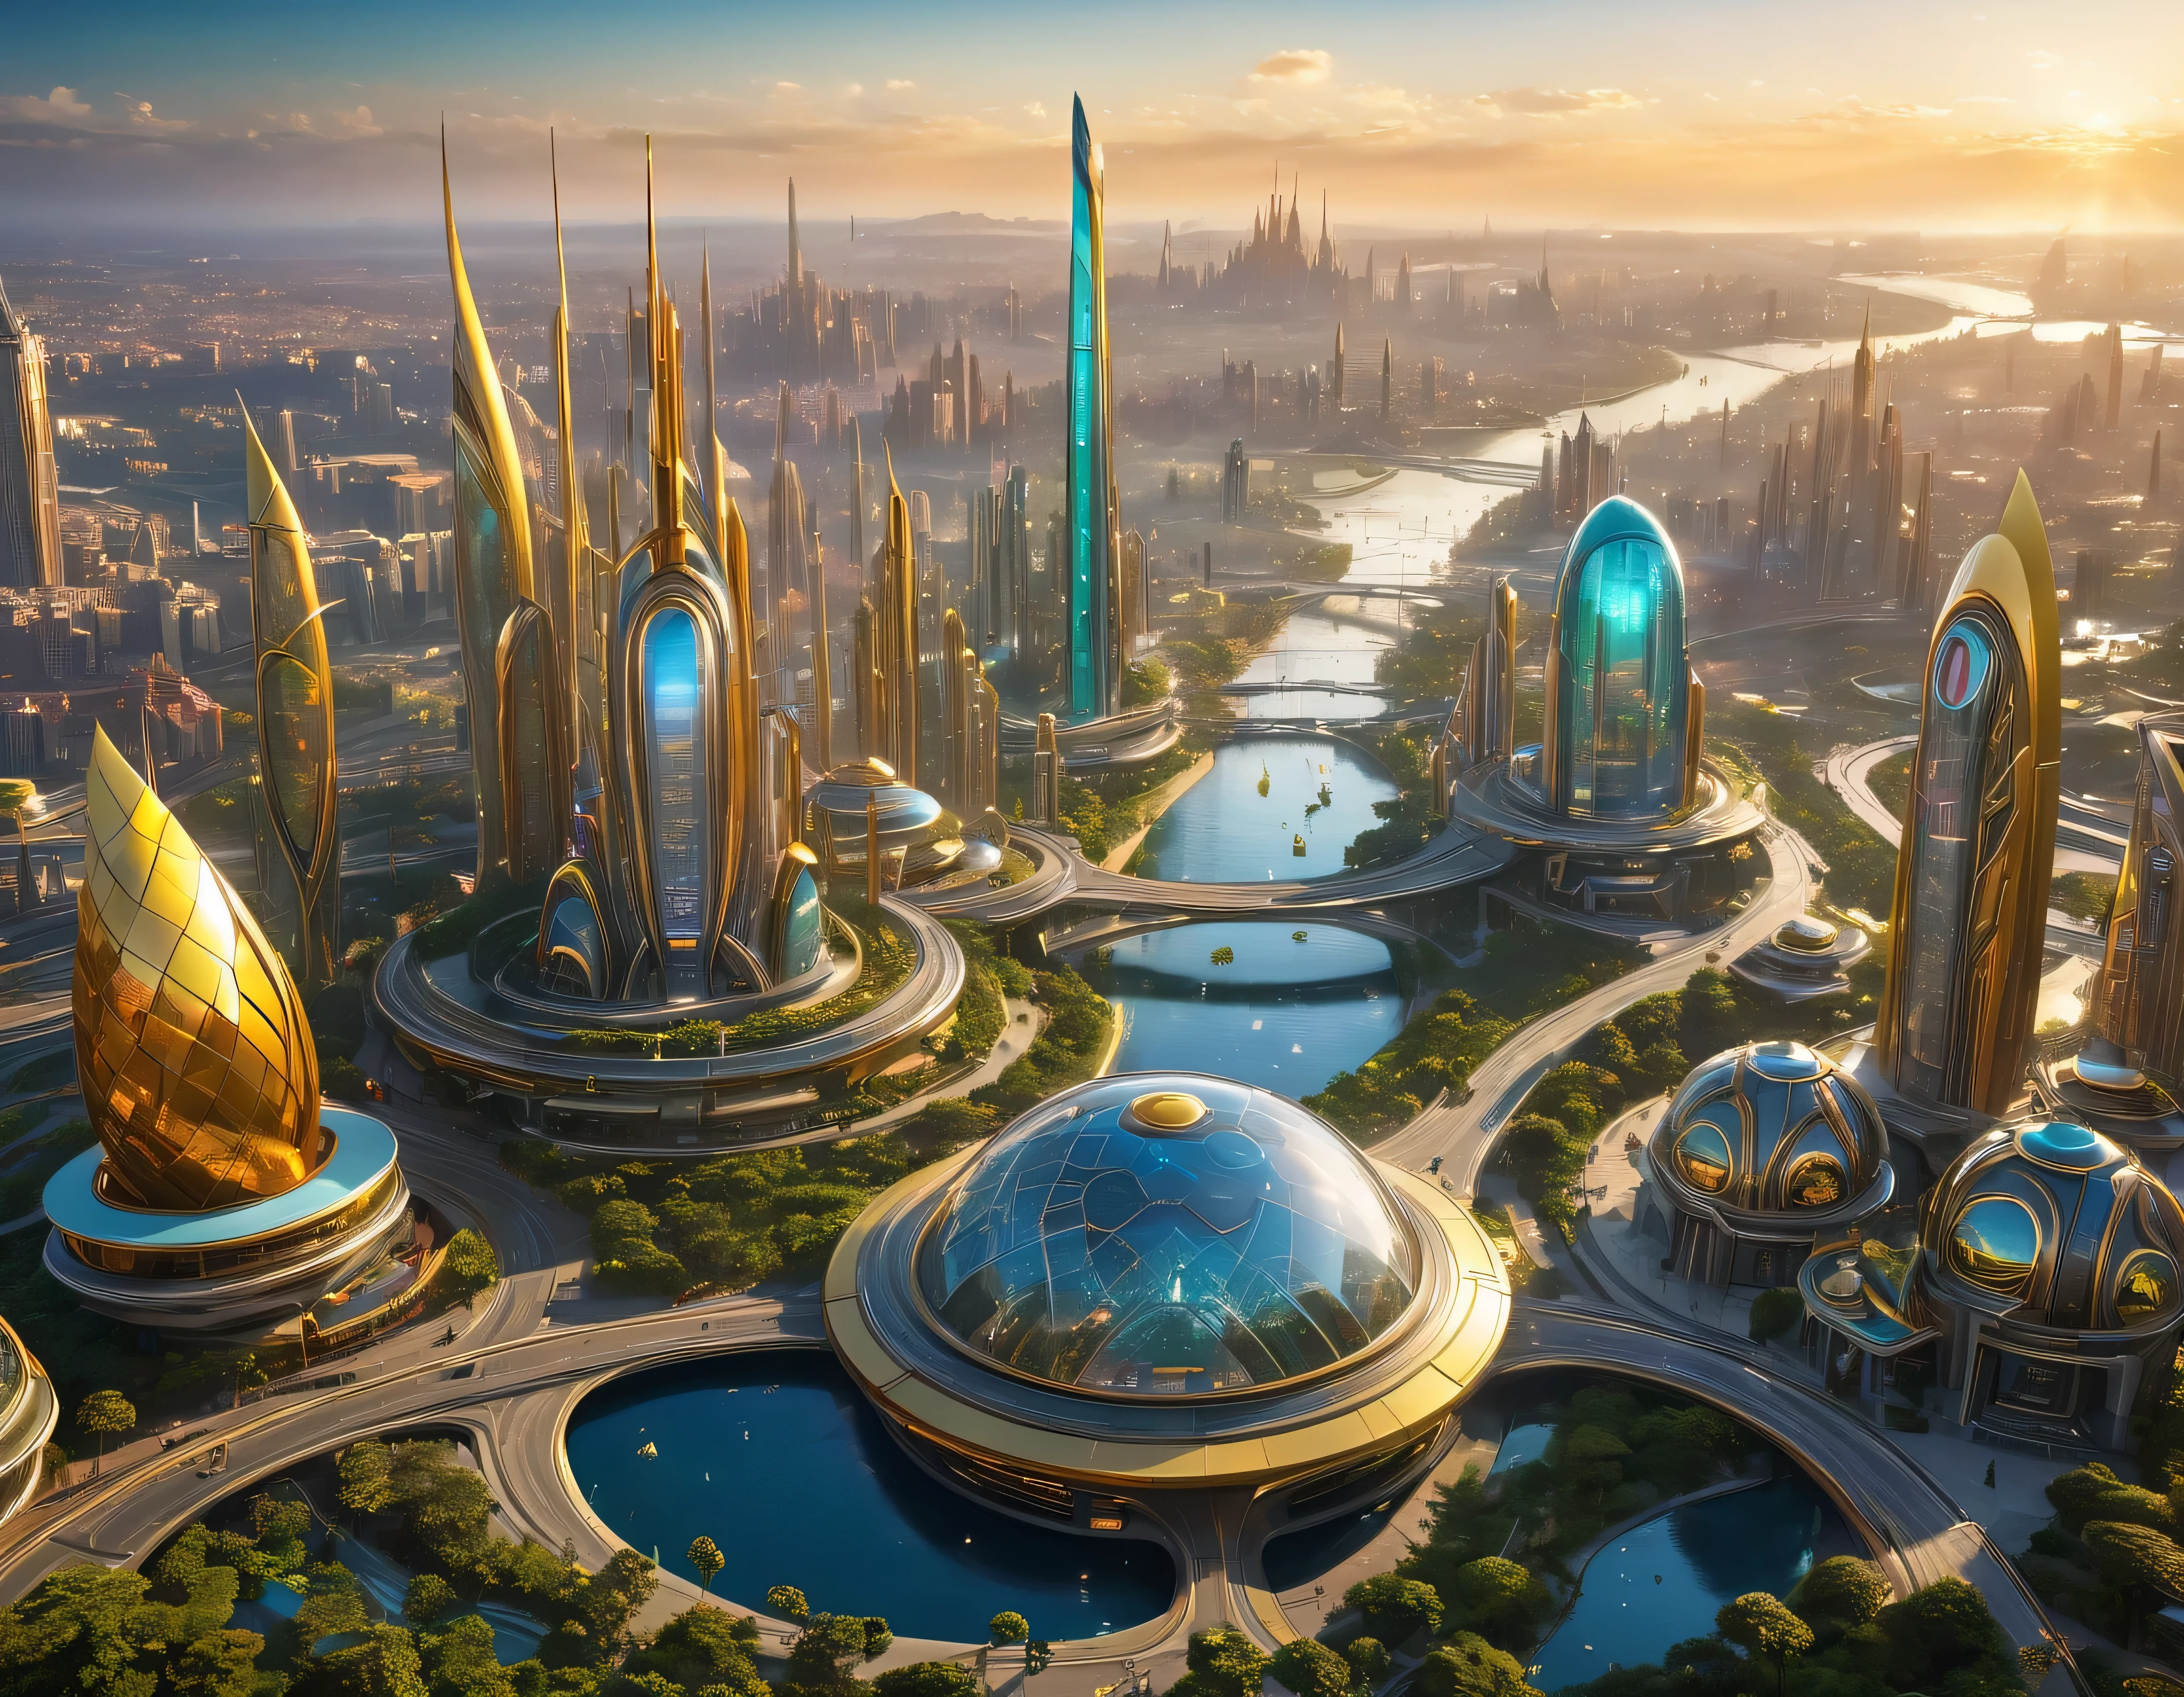 (黃金時段燈光), 特大城市, 科幻小說想像世界的大都市 , 類似未來主義的迪士尼樂園, 和最大的幻想, 巨大的建築物和橢圓形和十二面體的摩天大樓由金屬和玻璃組合在一起，其中銀色和彩色的照明廣告占主導地位。. 清晰的 8k 影像, (機器的複雜細節), 與許多建築物在一起.(頂級品質傑作).(逼真的影像), 直至背景的絕對清晰度